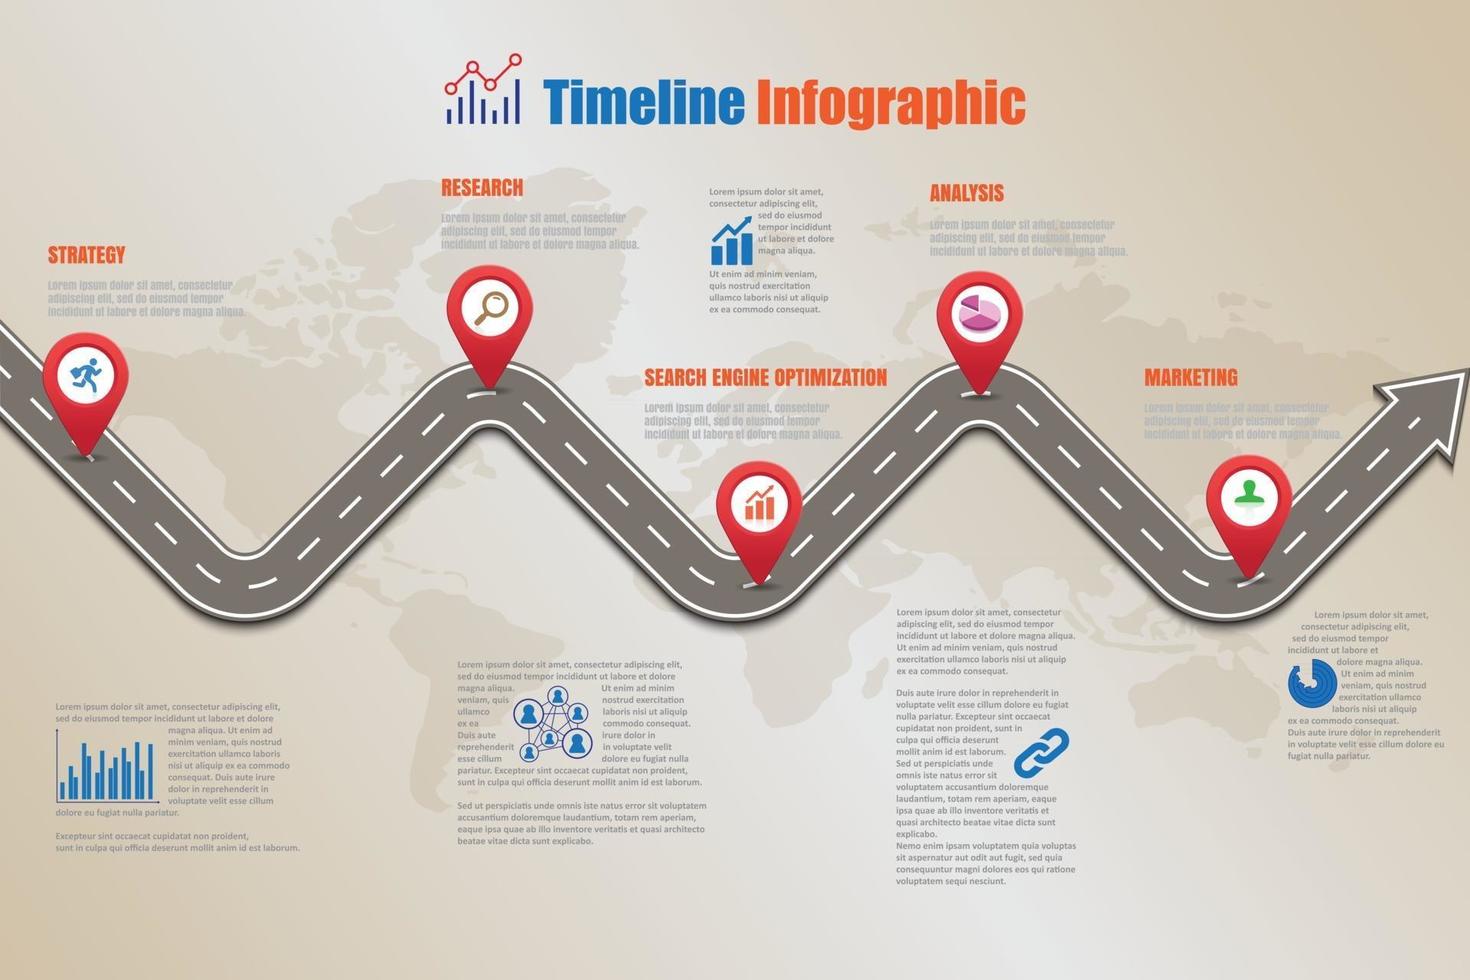 modello di infografica timeline di tabella di marcia aziendale con puntatori progettati per sfondo astratto pietra miliare diagramma moderno processo tecnologia dati di marketing digitale presentazione grafico illustrazione vettoriale